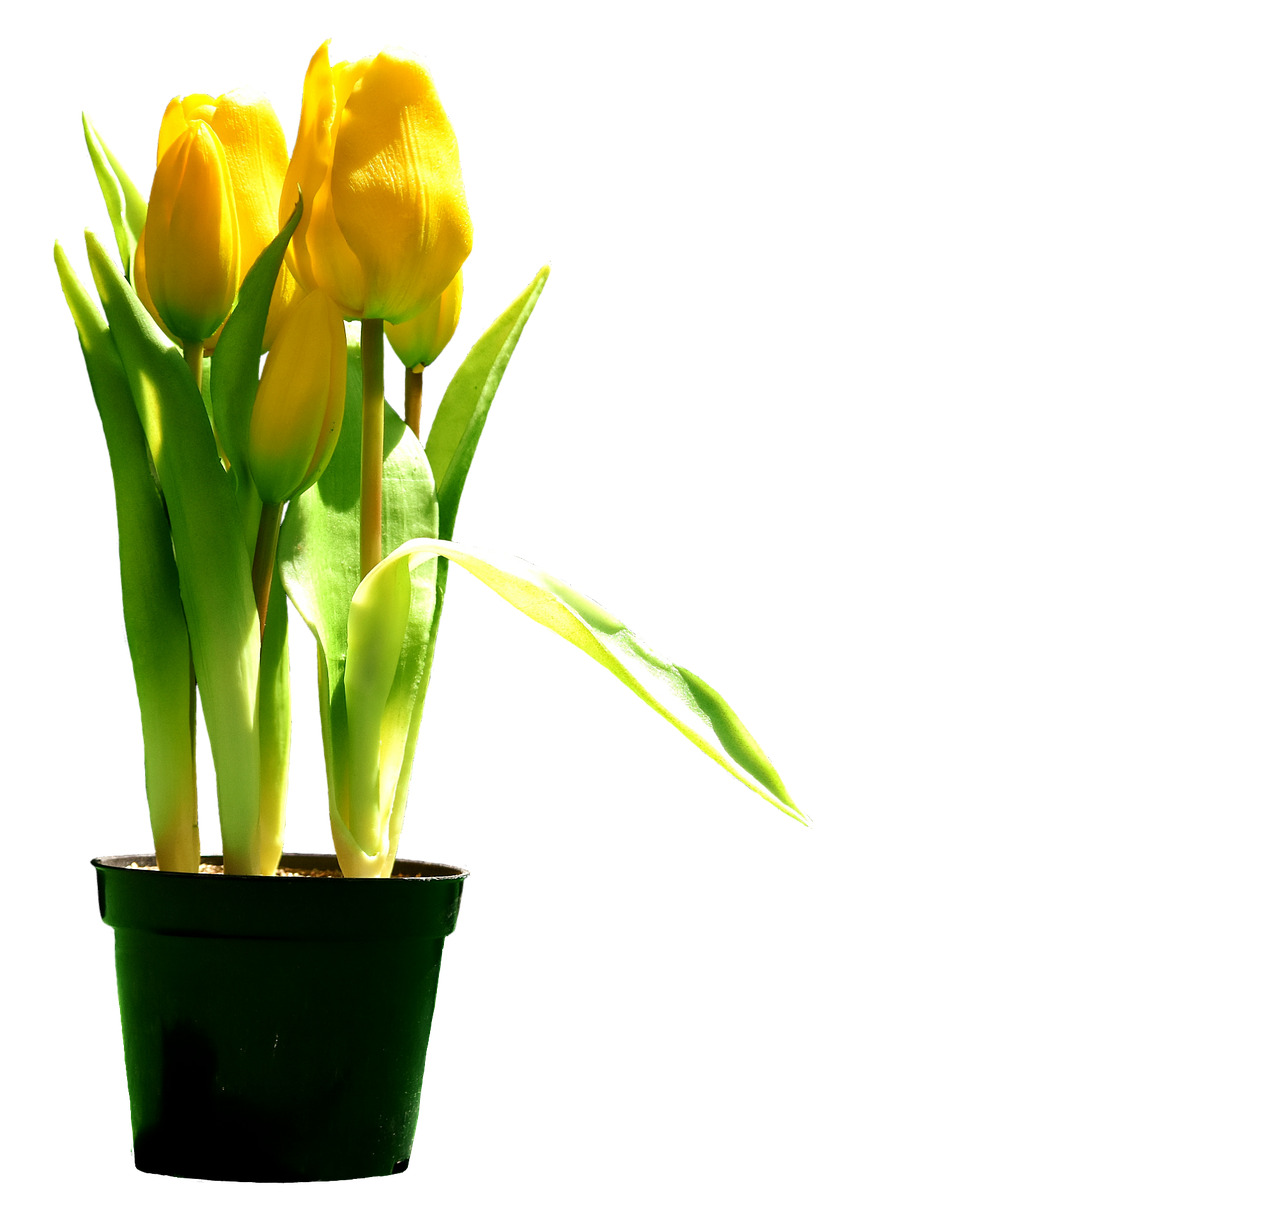 tulips yellow flowers free photo